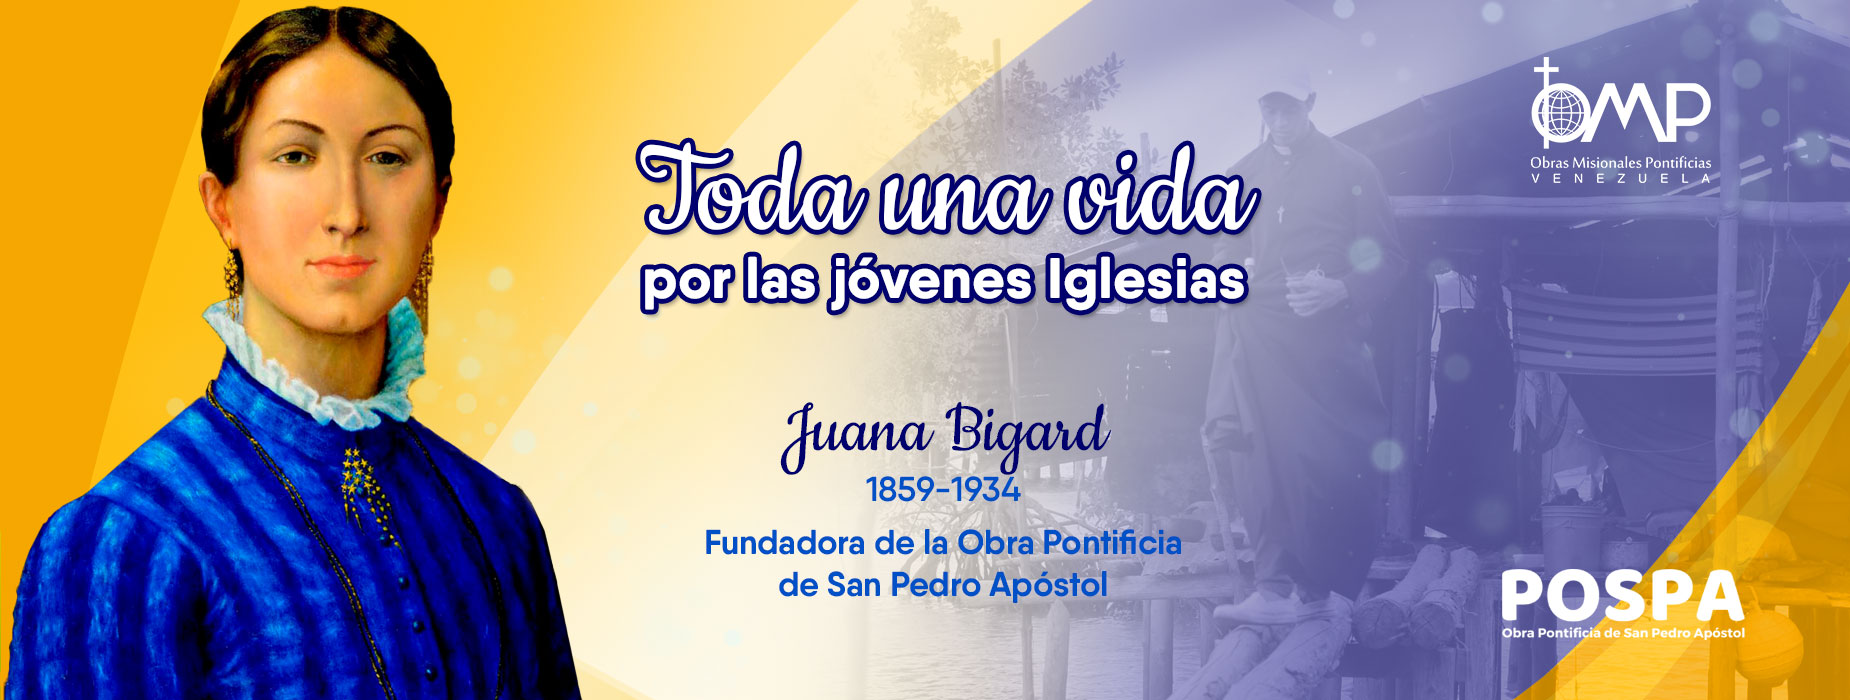 Juana Bigart